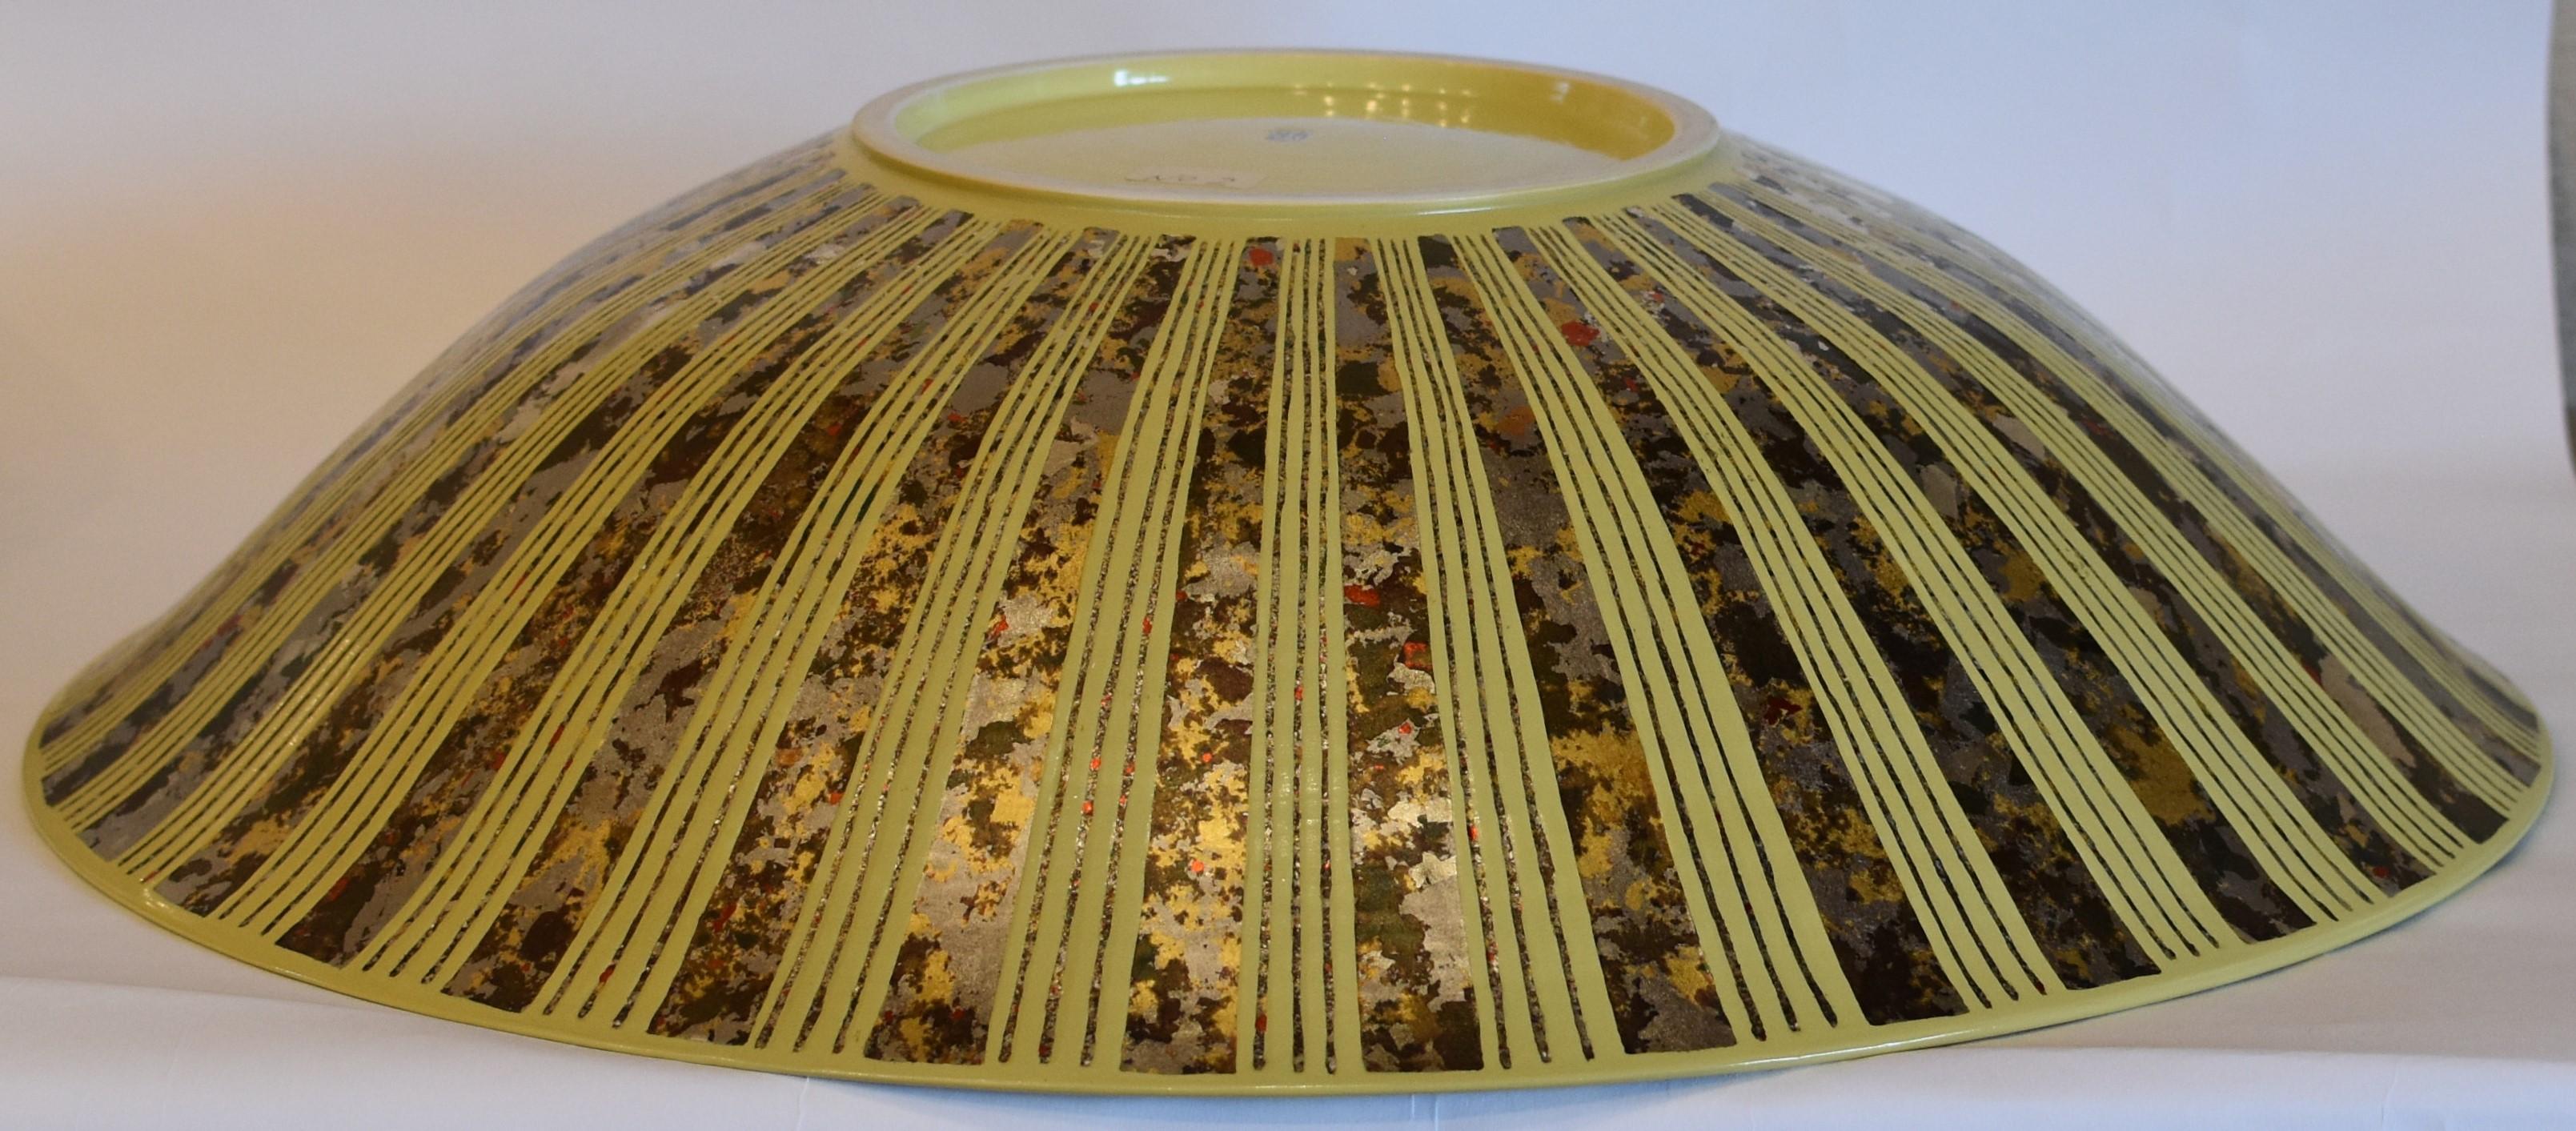 Exquise grande porcelaine japonaise contemporaine de qualité muséale primée chargeur profond en jaune vif, ornée de gravures dans un motif compliqué comporte des feuilles d'argent en platine, en or et une belle combinaison de couleurs multiples,